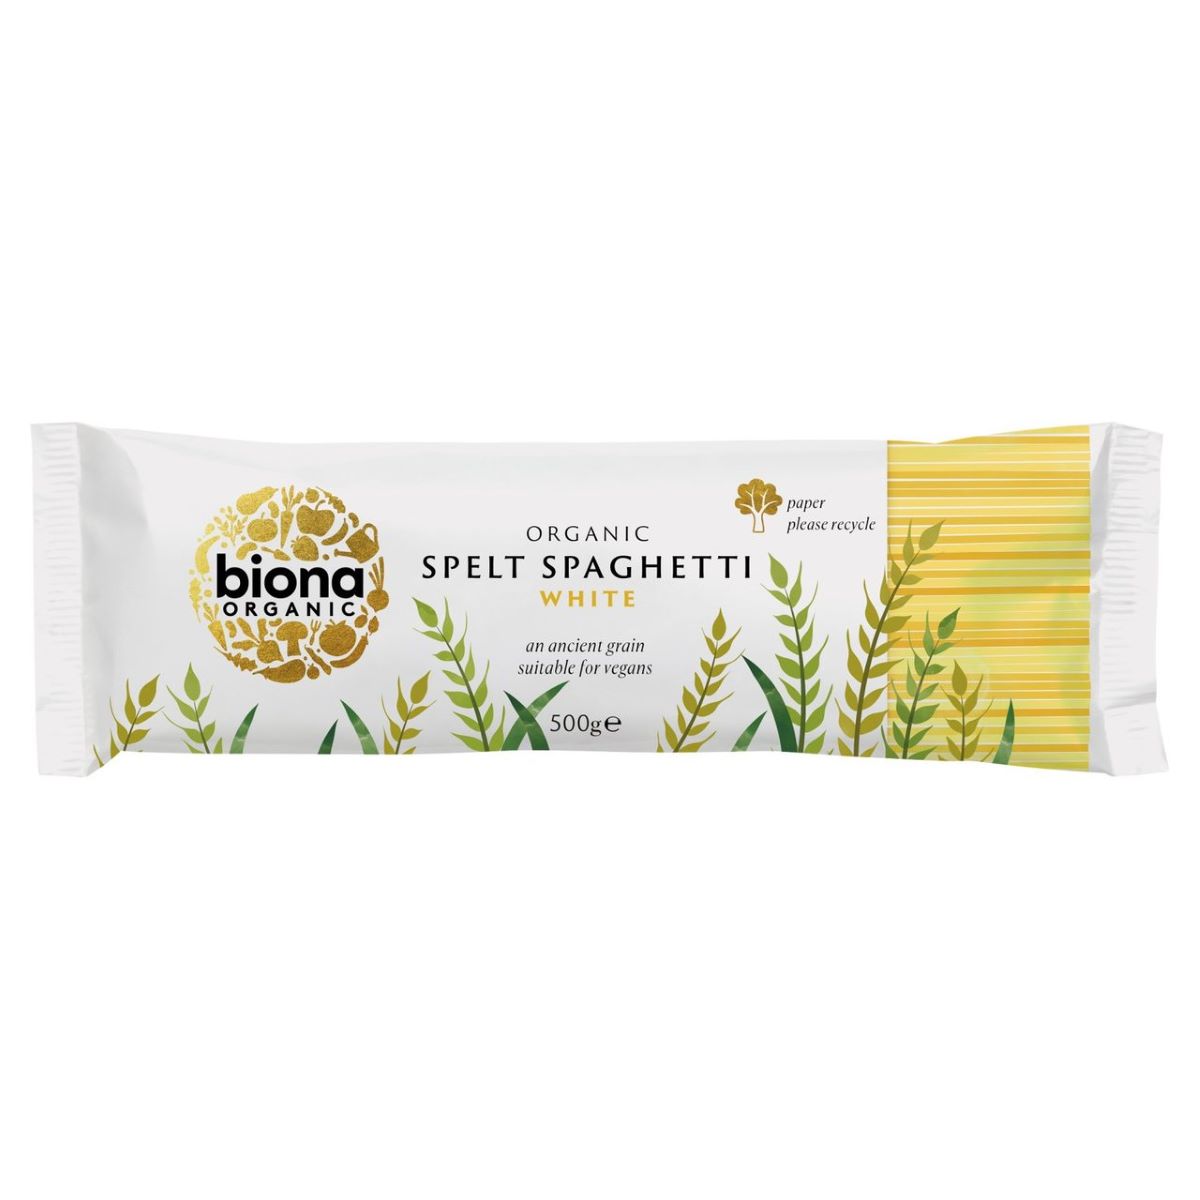 Biona Organic Spelt Spaghetti White 500g